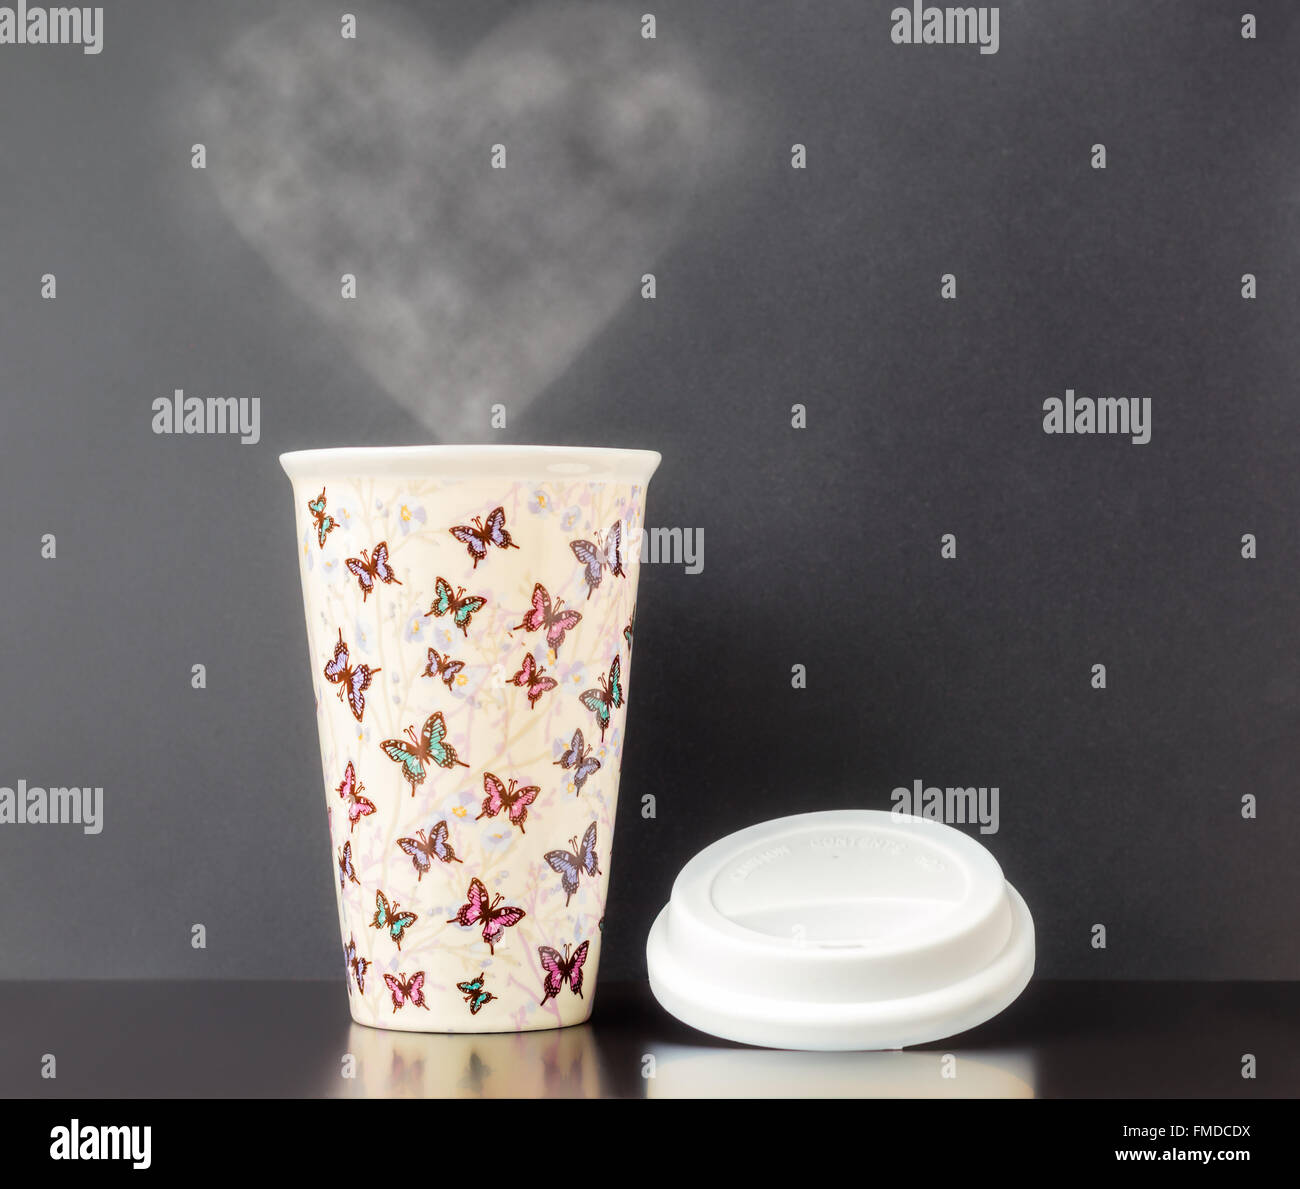 Keramik isoliert Tasse mit bunten Schmetterling Muster mit dunkelgrauen Hintergrund und Herz Form Dampf. Stockfoto